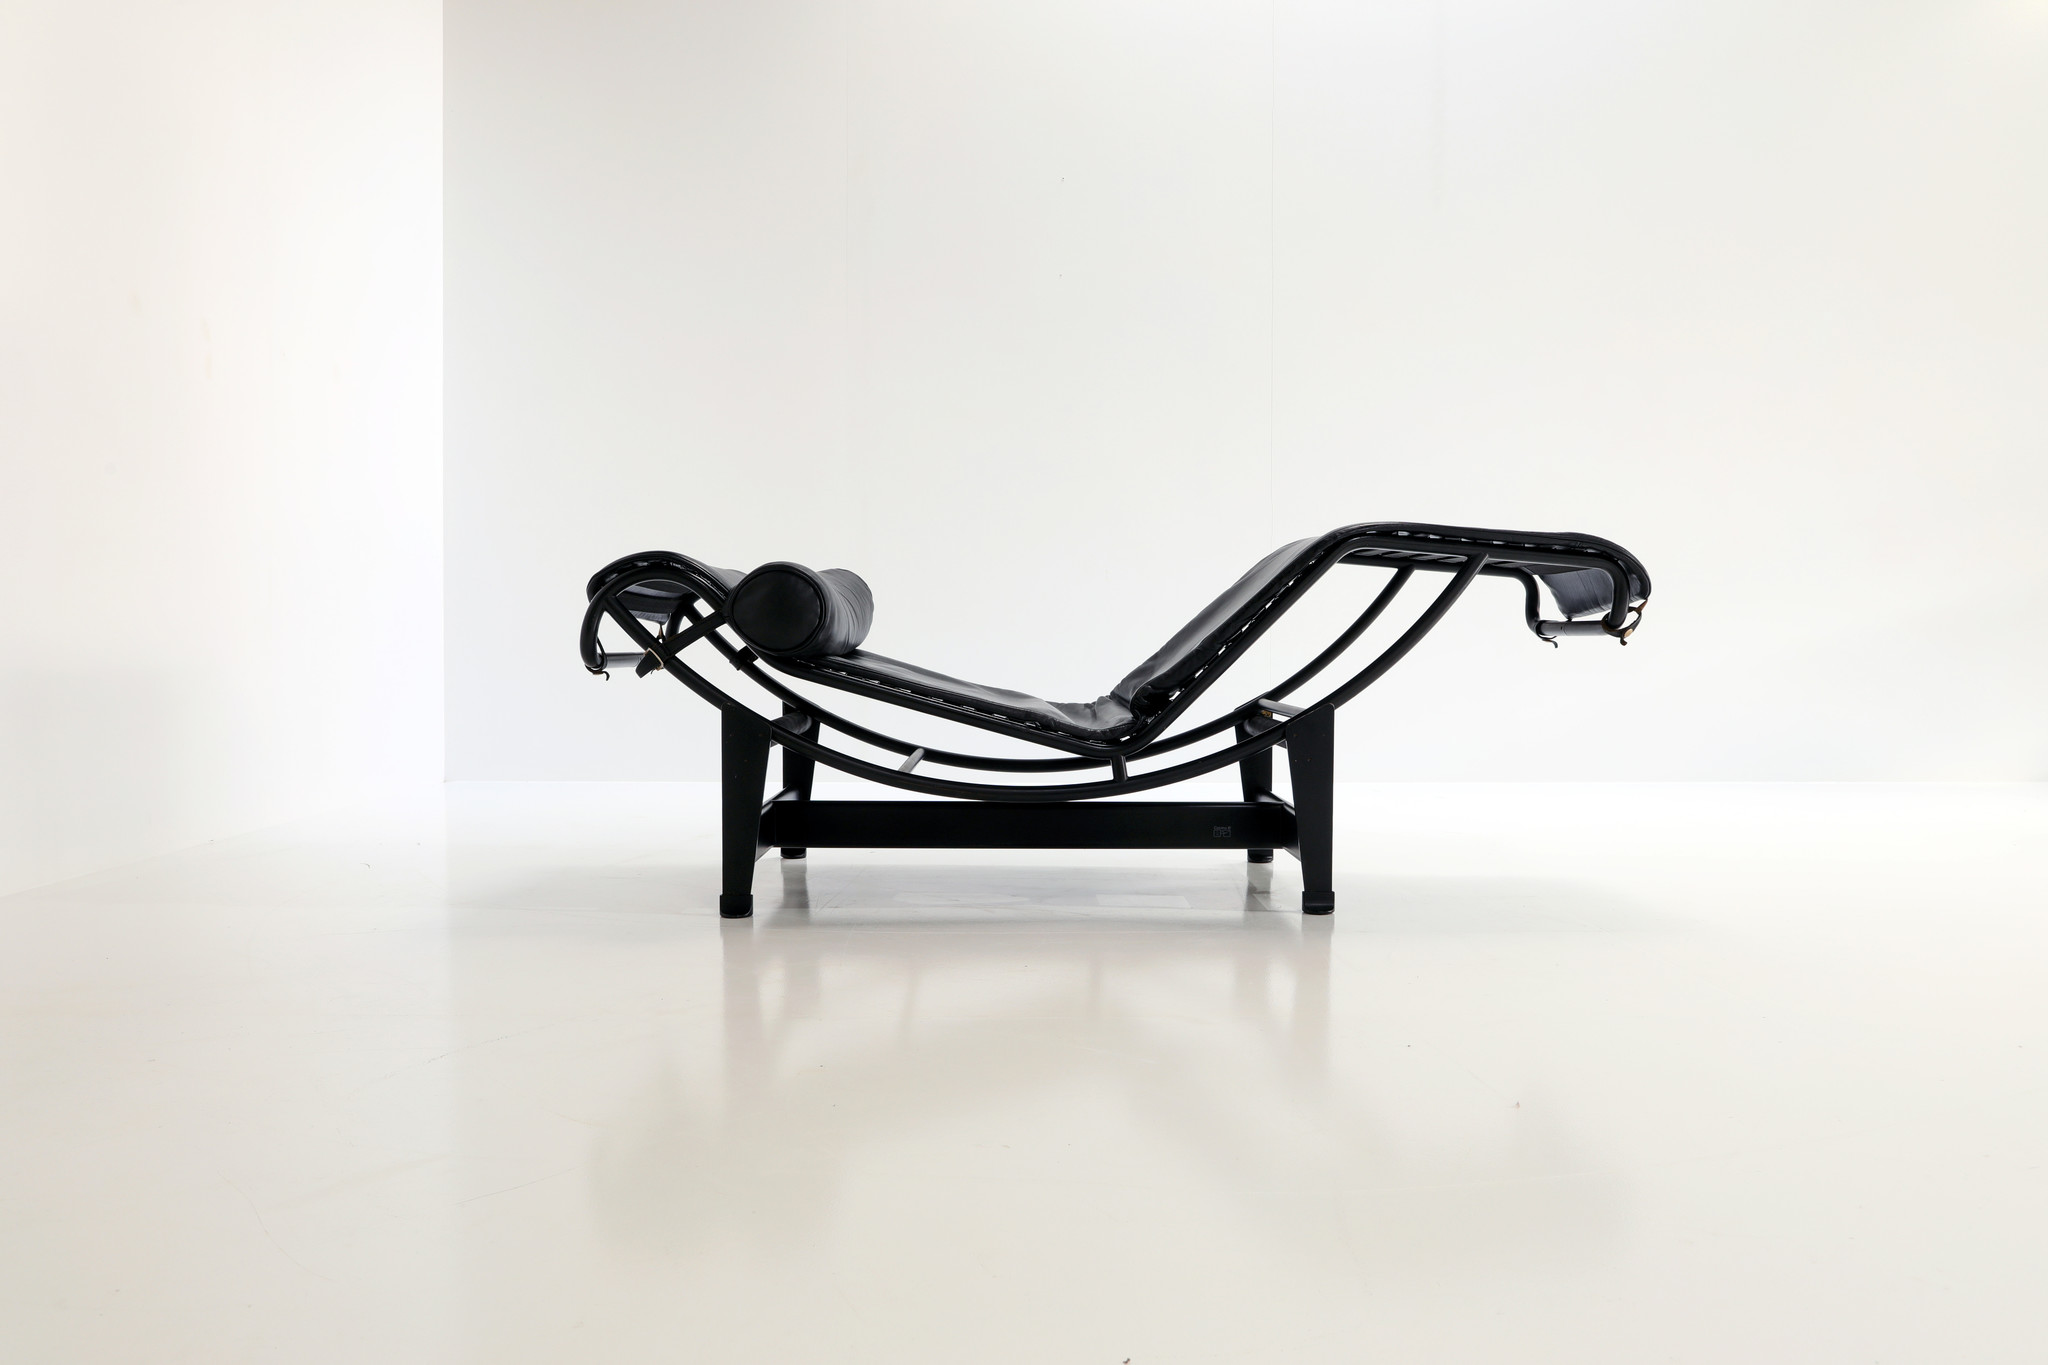 Le Corbusier Chaise Lounge "Black edition", 1980s